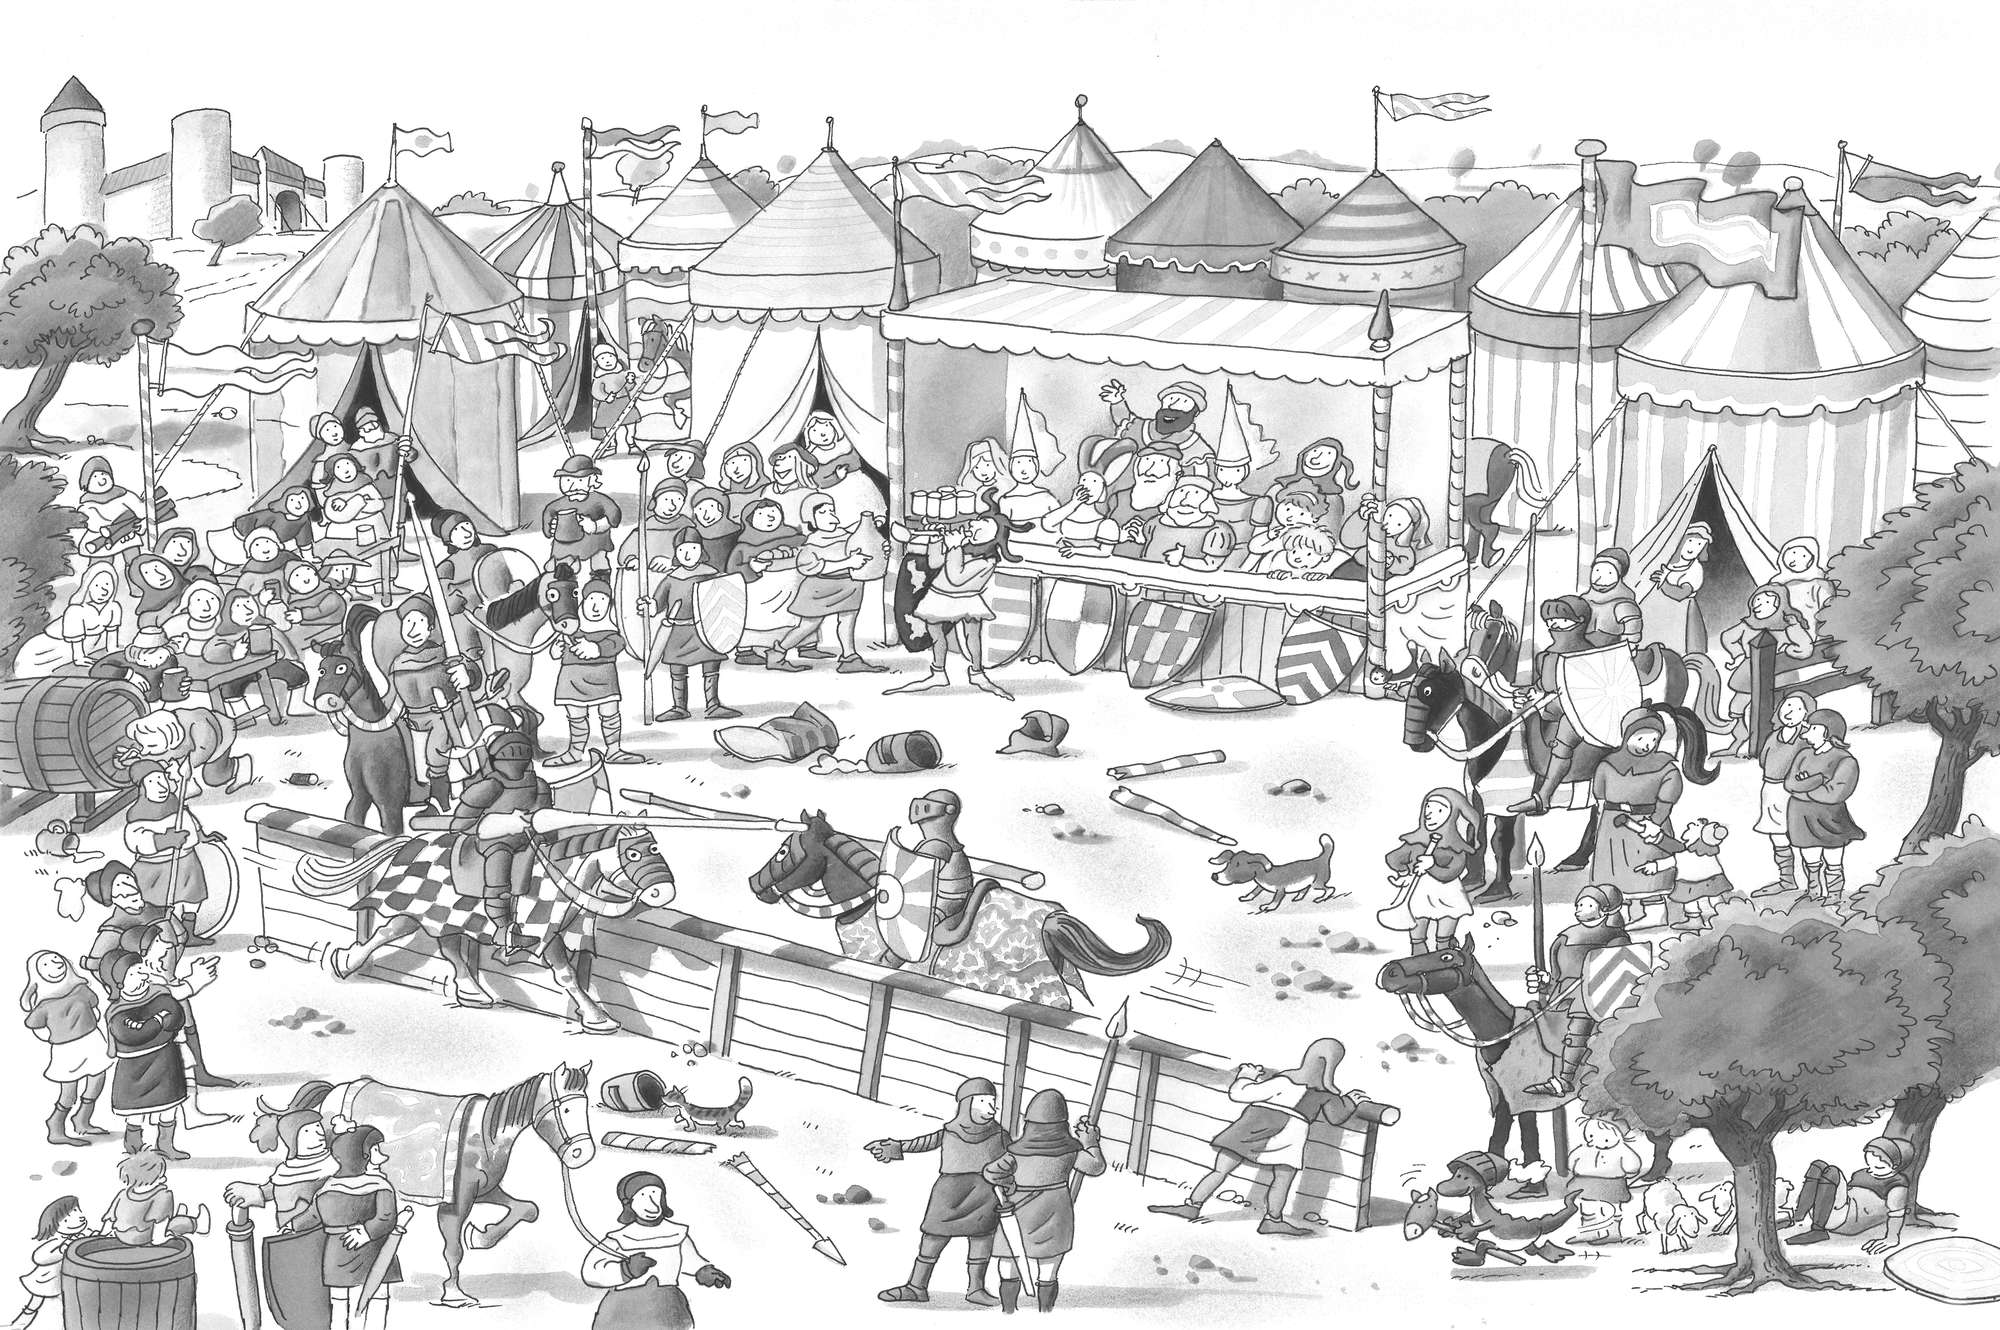             Papier peint panoramique enfants fête des chevaliers avec festival noir blanc sur intissé lisse premium
        